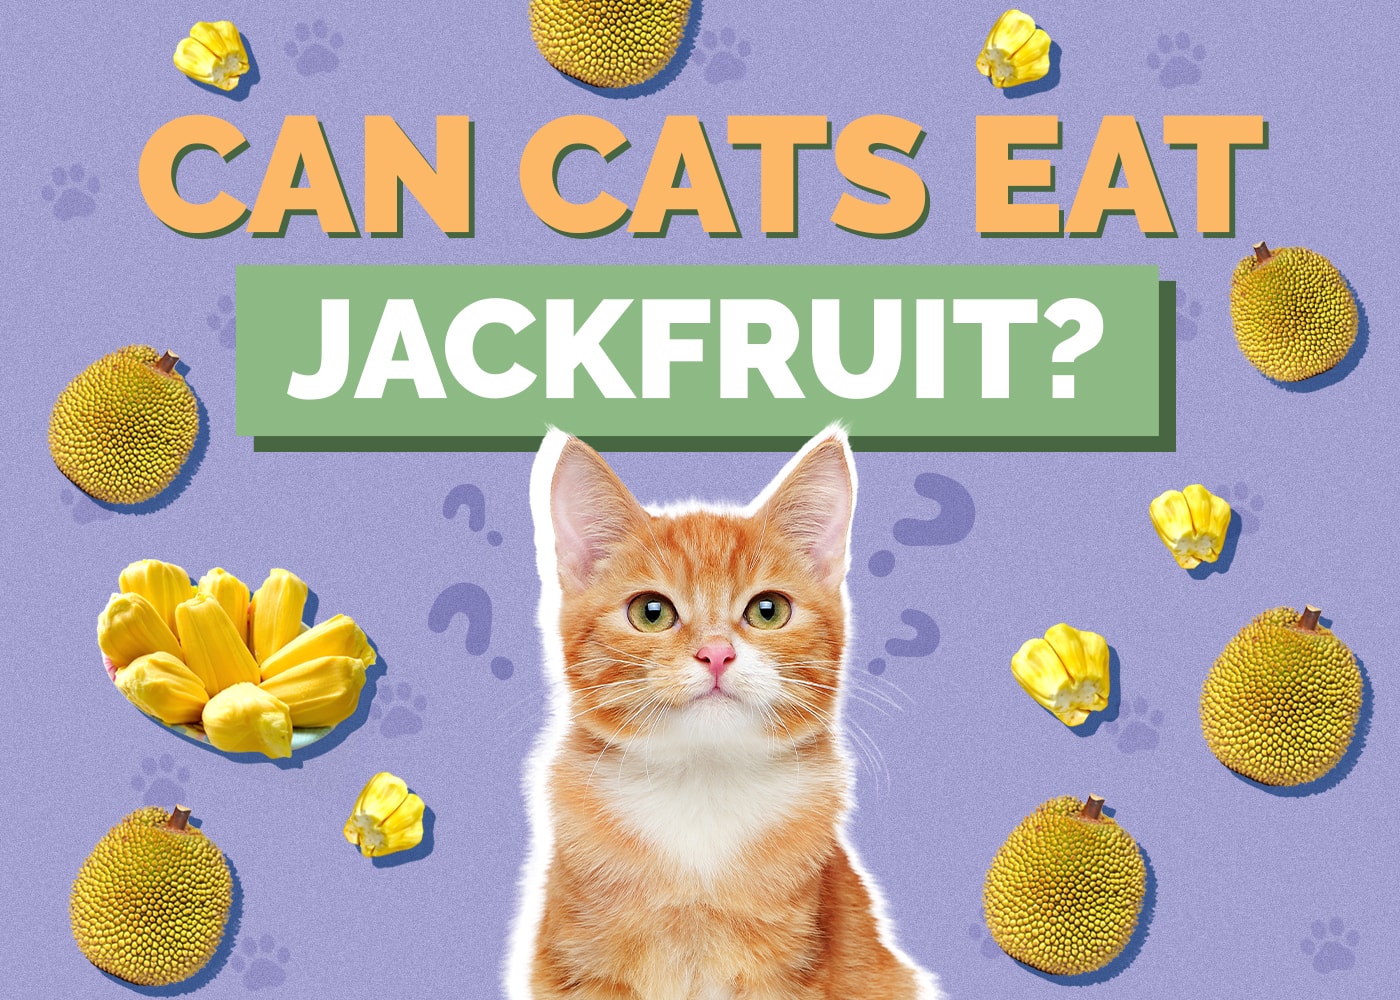 Can Cats Eat jackfruit